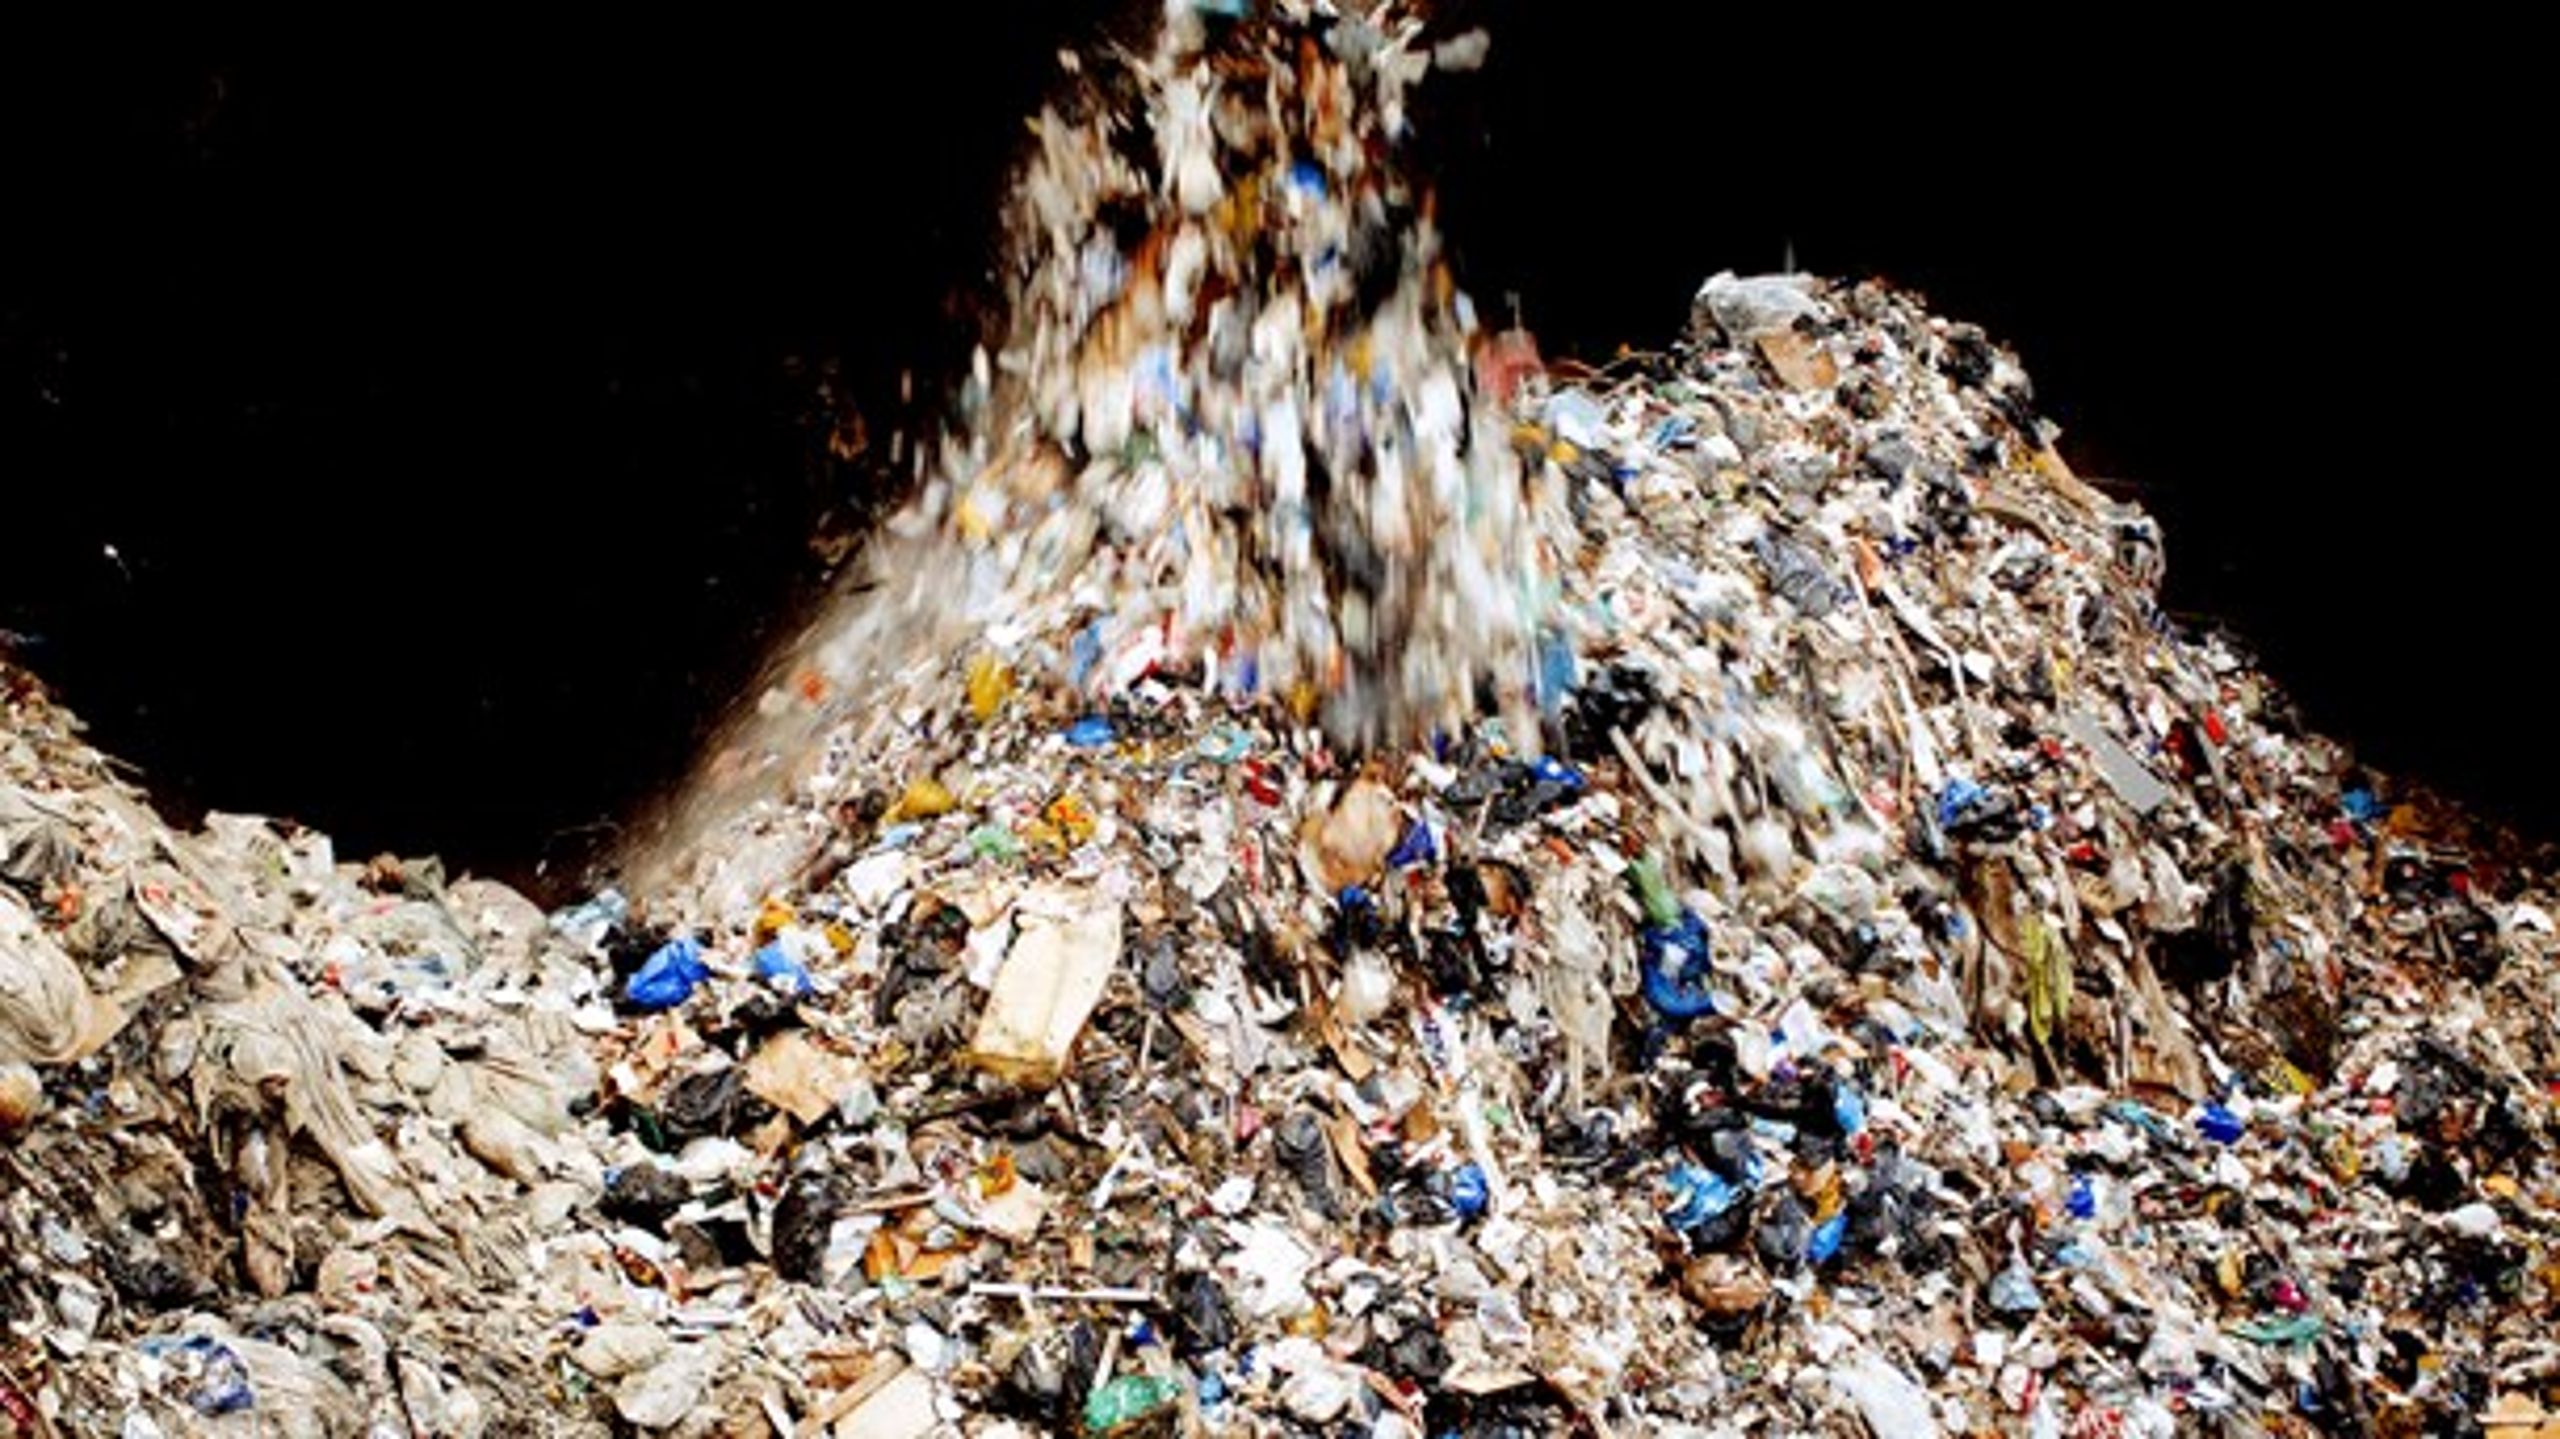 Kommuner og affaldsselskaber genbruger og genanvender mere og mere affald og skaber væsentlige CO2-gevinster på den måde, mener Mads Jakobsen og Per Bødker.